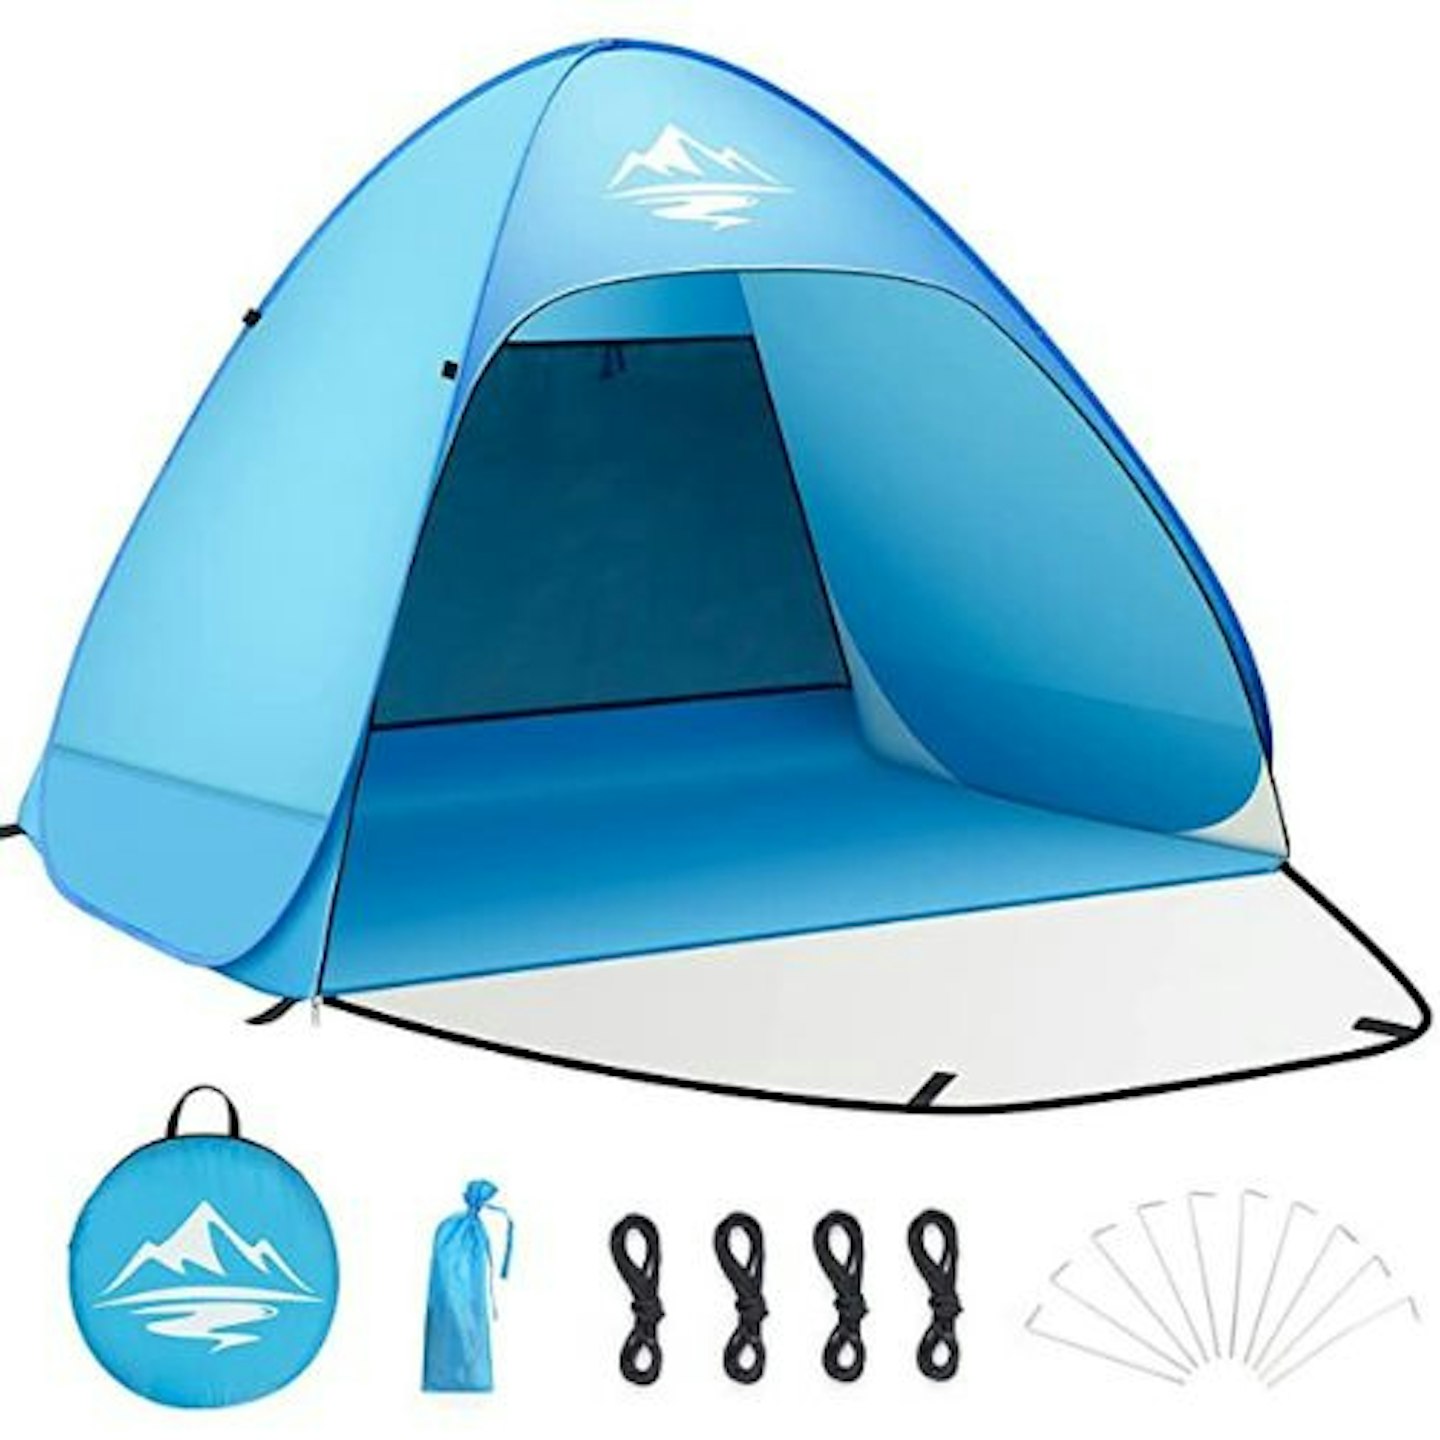 Best lightweight: Pop up beach tent